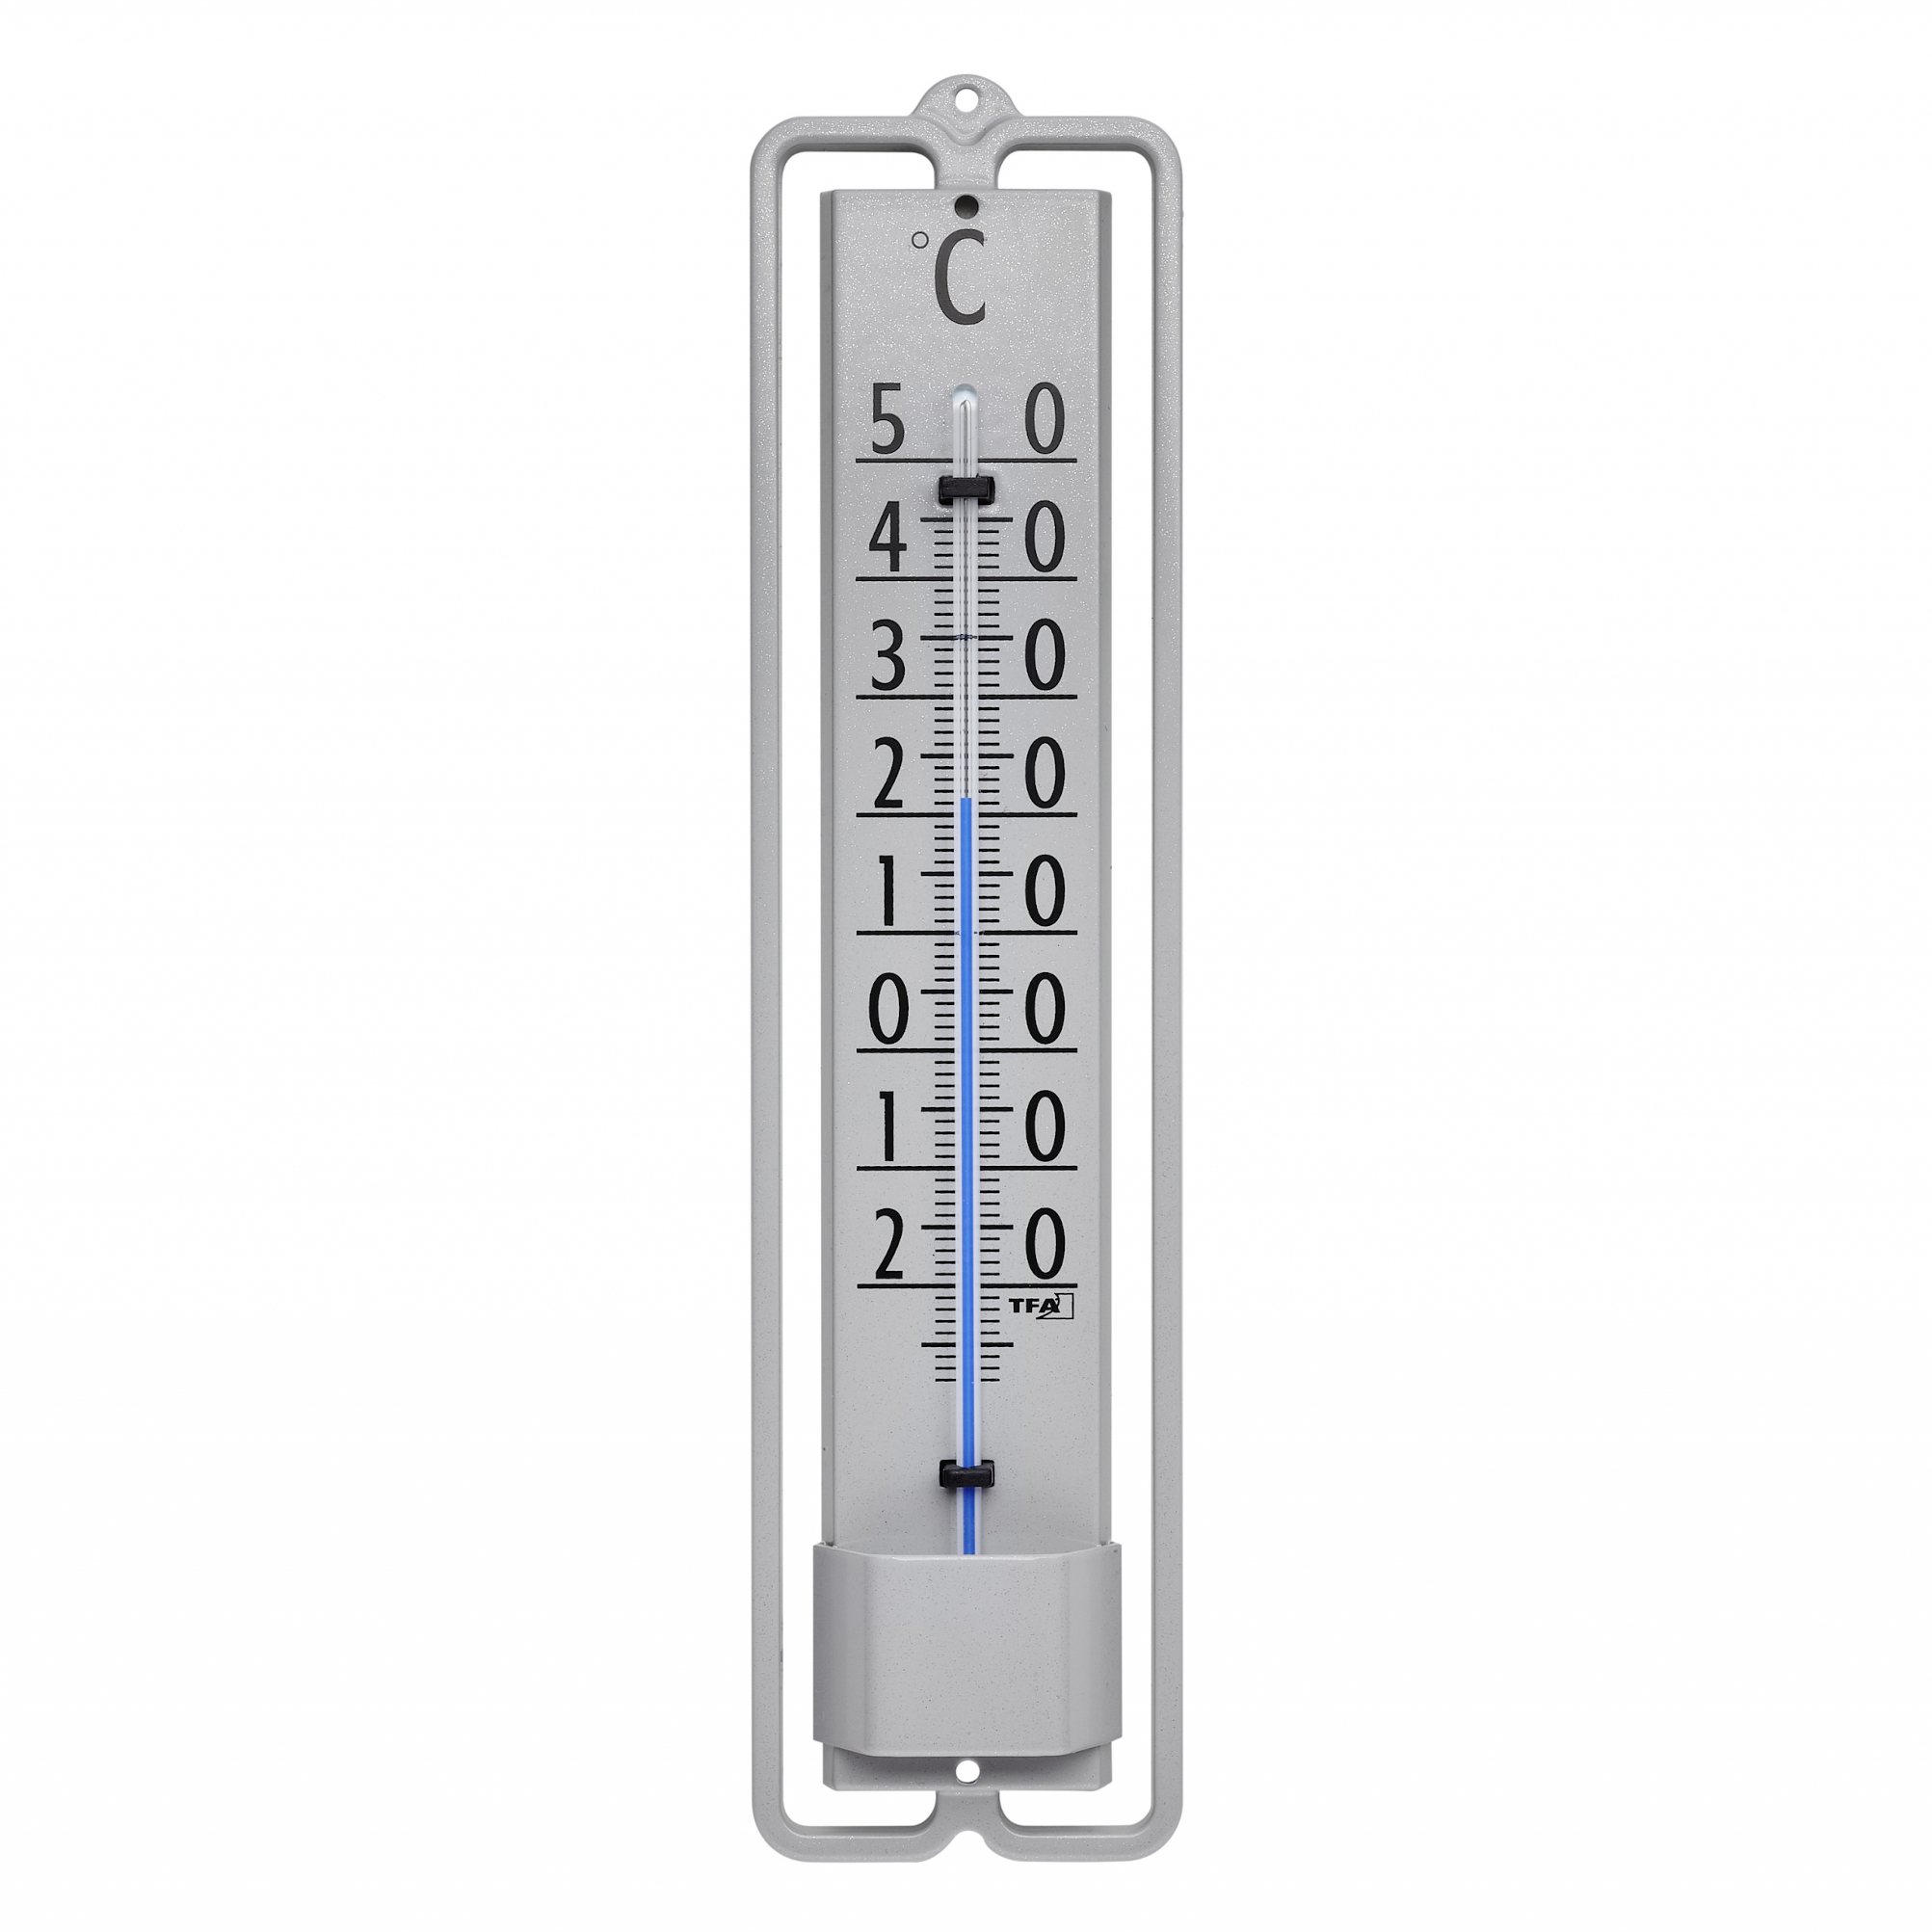 Analoges Innen-Außen-Thermometer aus Metall